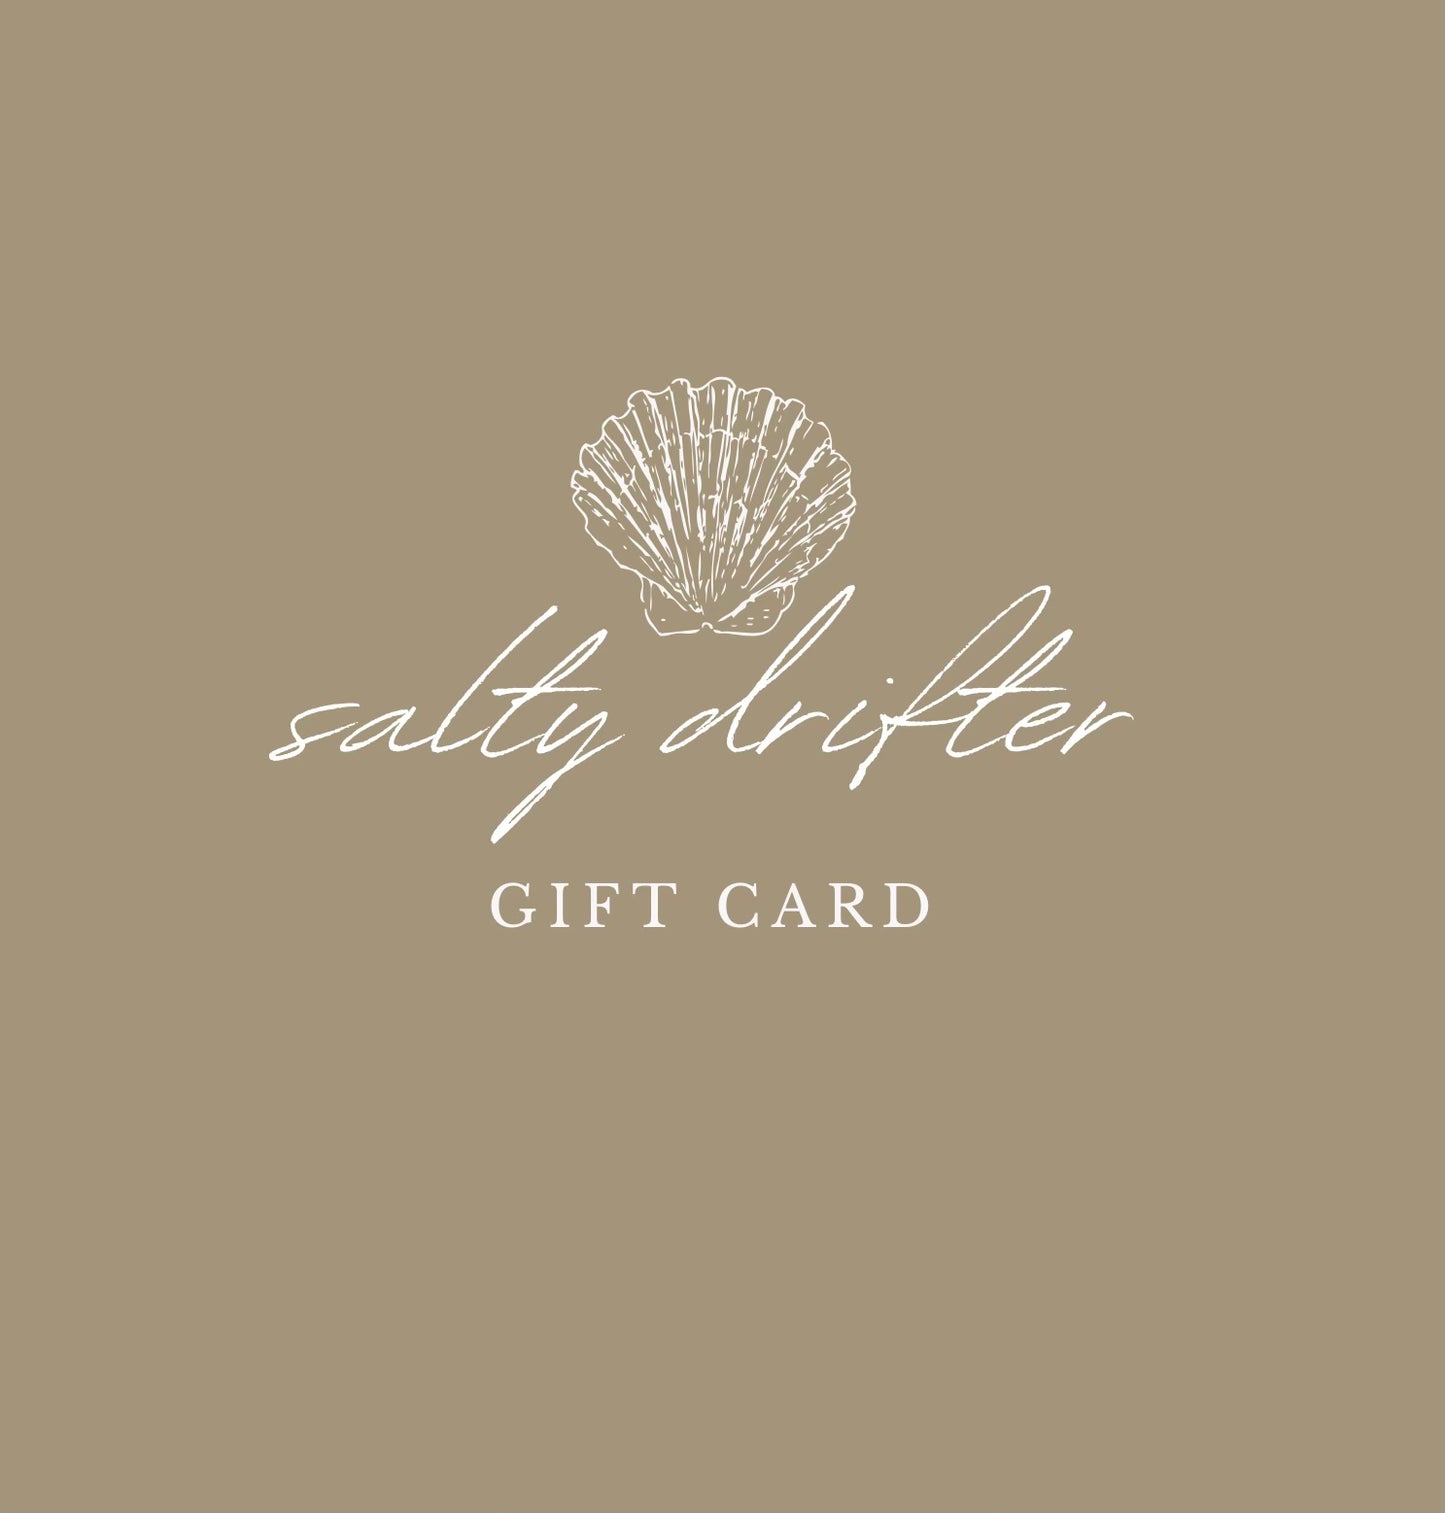 Salty Drifter Gift Card